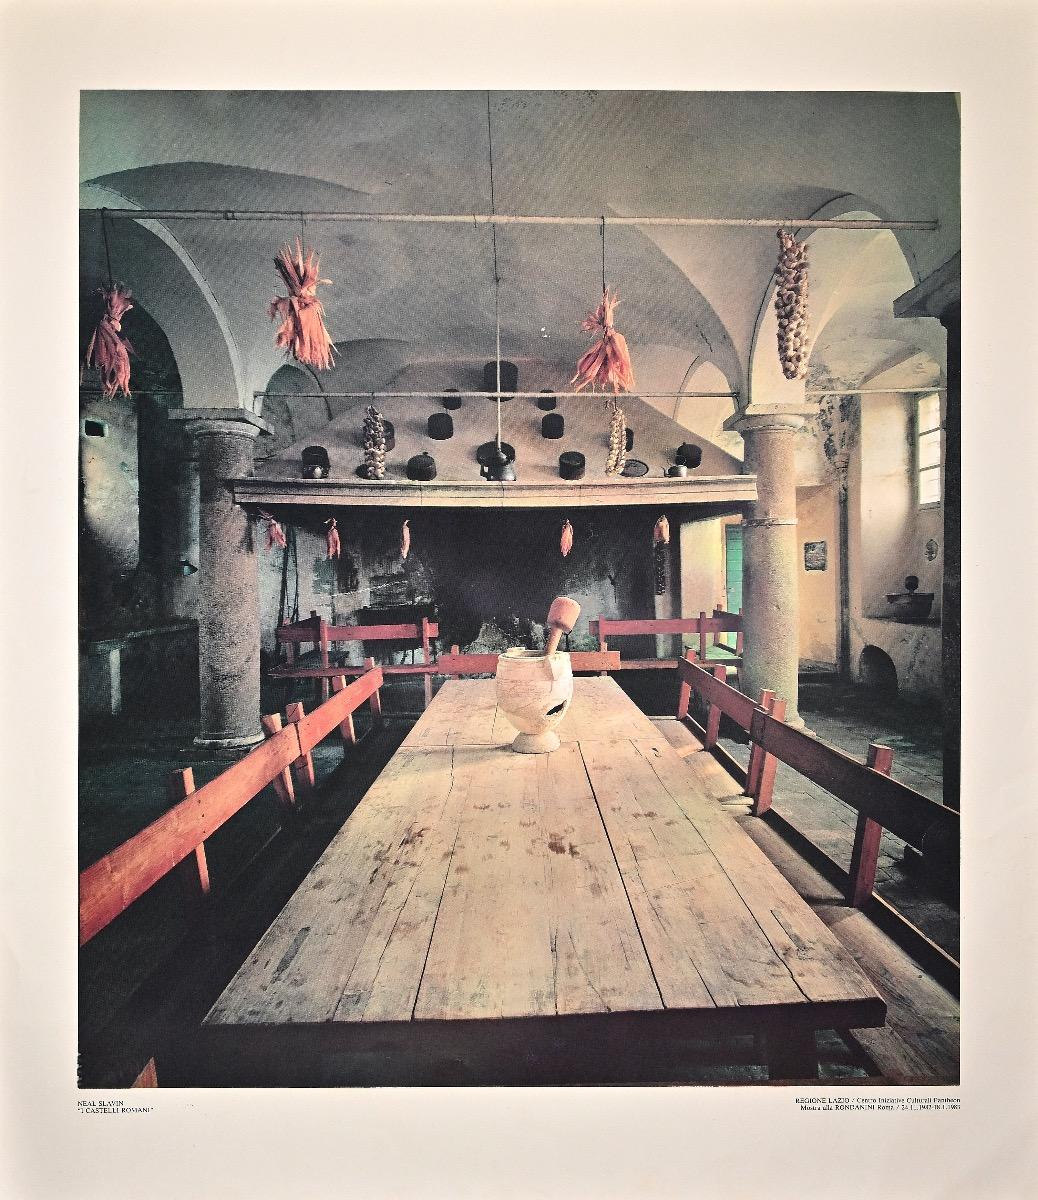 I Castelli Romani ist ein großartiges Plakat von Neal Slavin aus dem Jahr 1983.

Farbiger Offsetdruck, in sehr gutem Zustand.

Regione Lazio / Centro Iniziative Culturali Pantheon - Mostra alla Rondanini Roma / 24.11.1982 - 18.1.1983, rechts unten